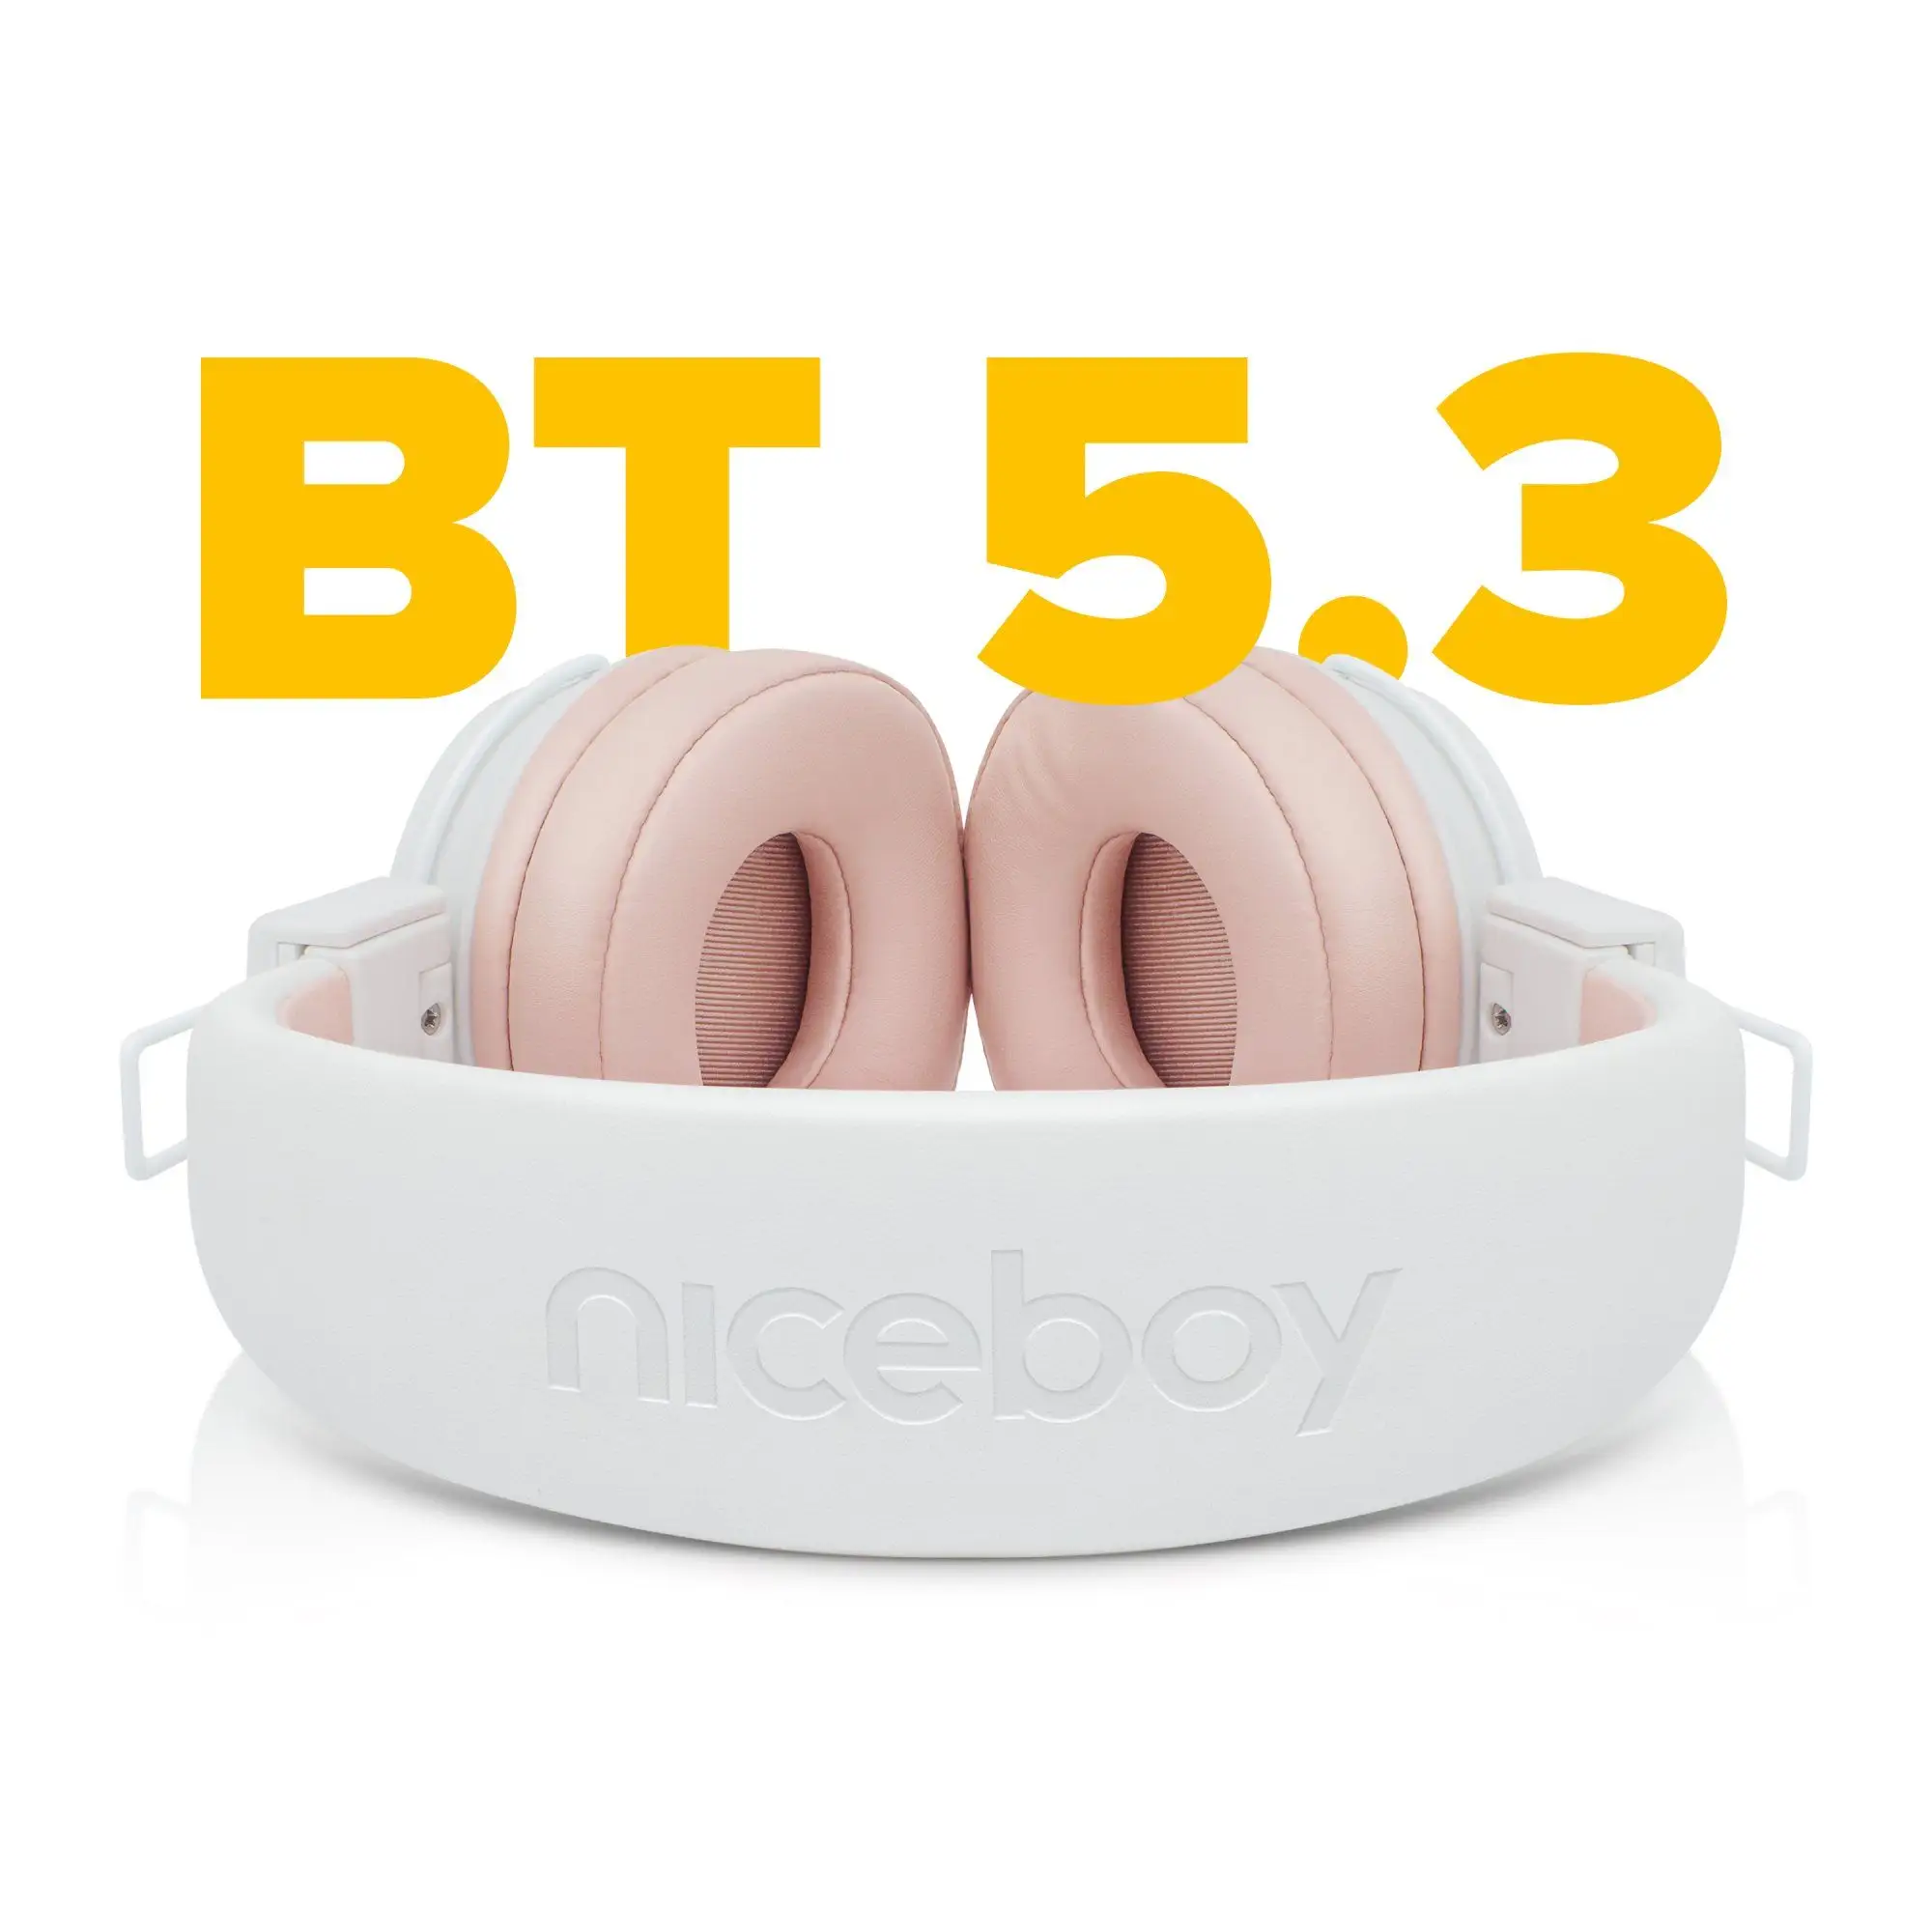  Bluetooth fejhallgató niceboy hive joy 3 kihangosító mikrofon app ion kiegyenlítő nagyszerű hangzás hosszú akkumulátor élettartam hangvezérlés könnyű kialakítás 